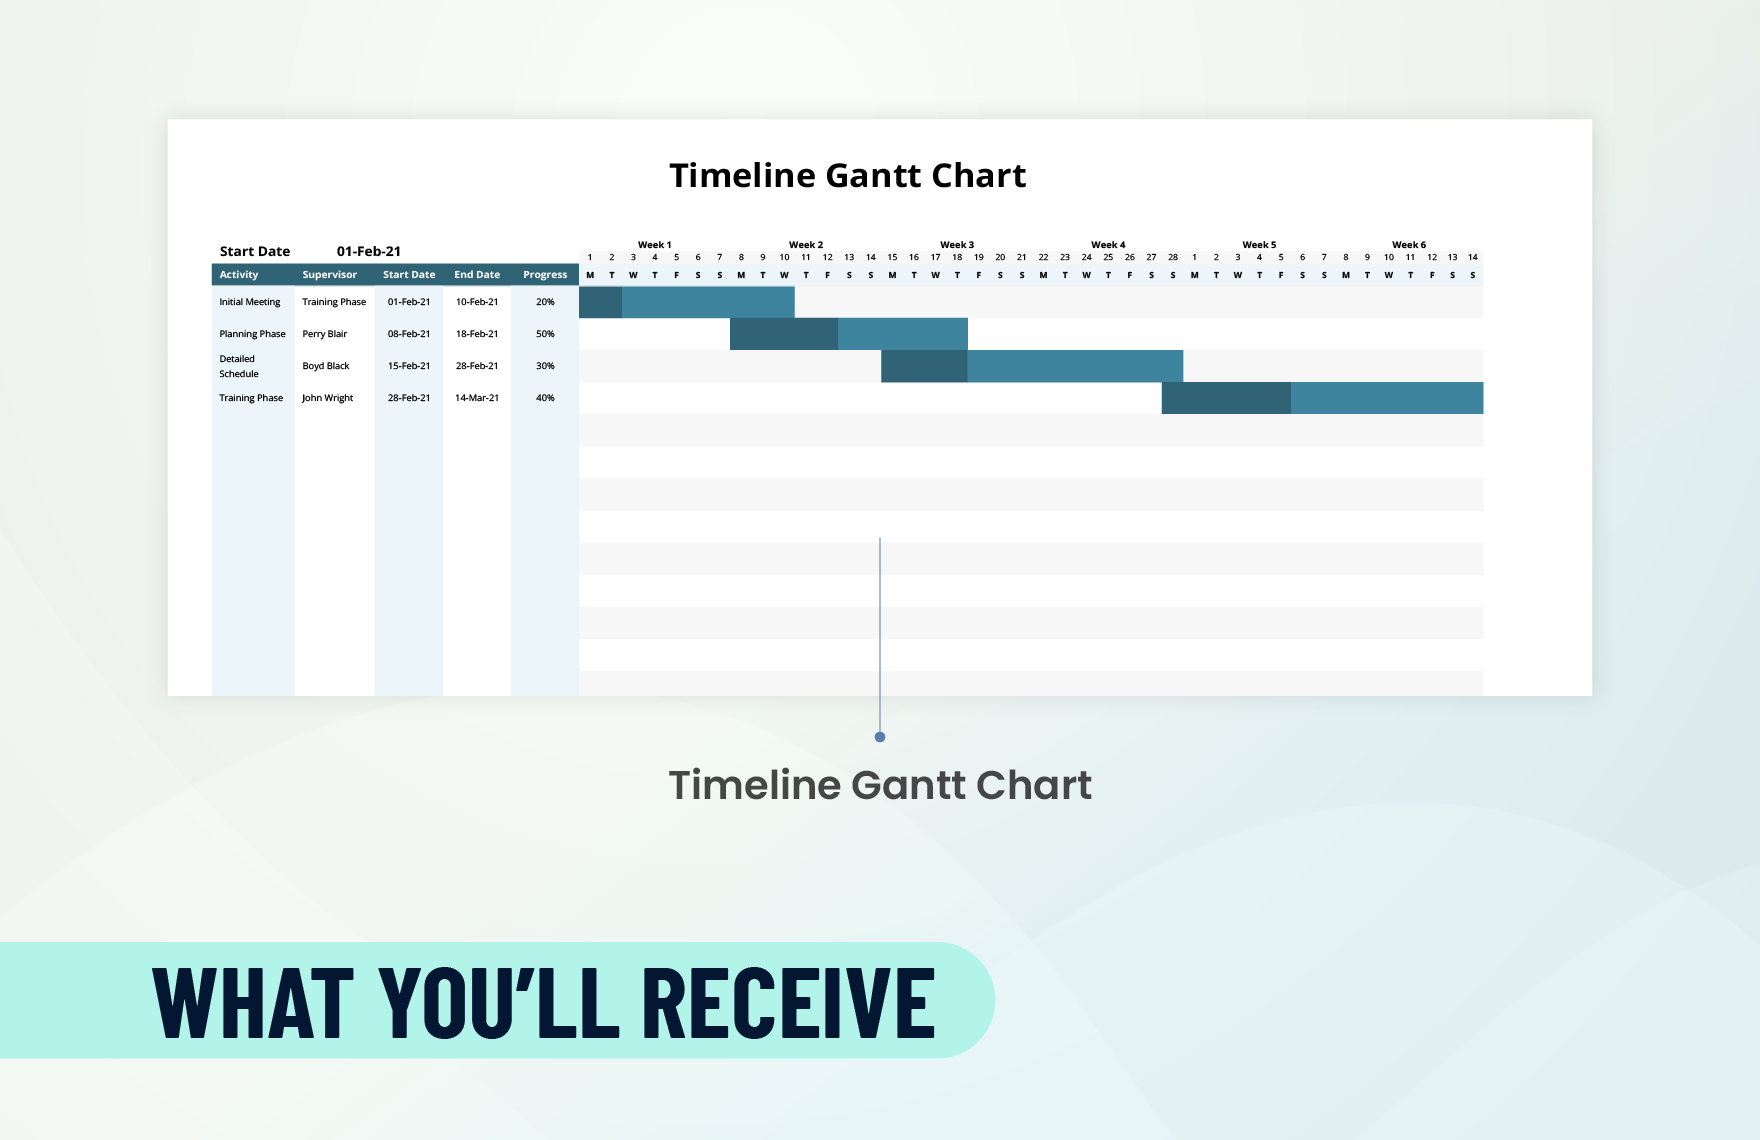 Sample Timeline Gantt Chart Template